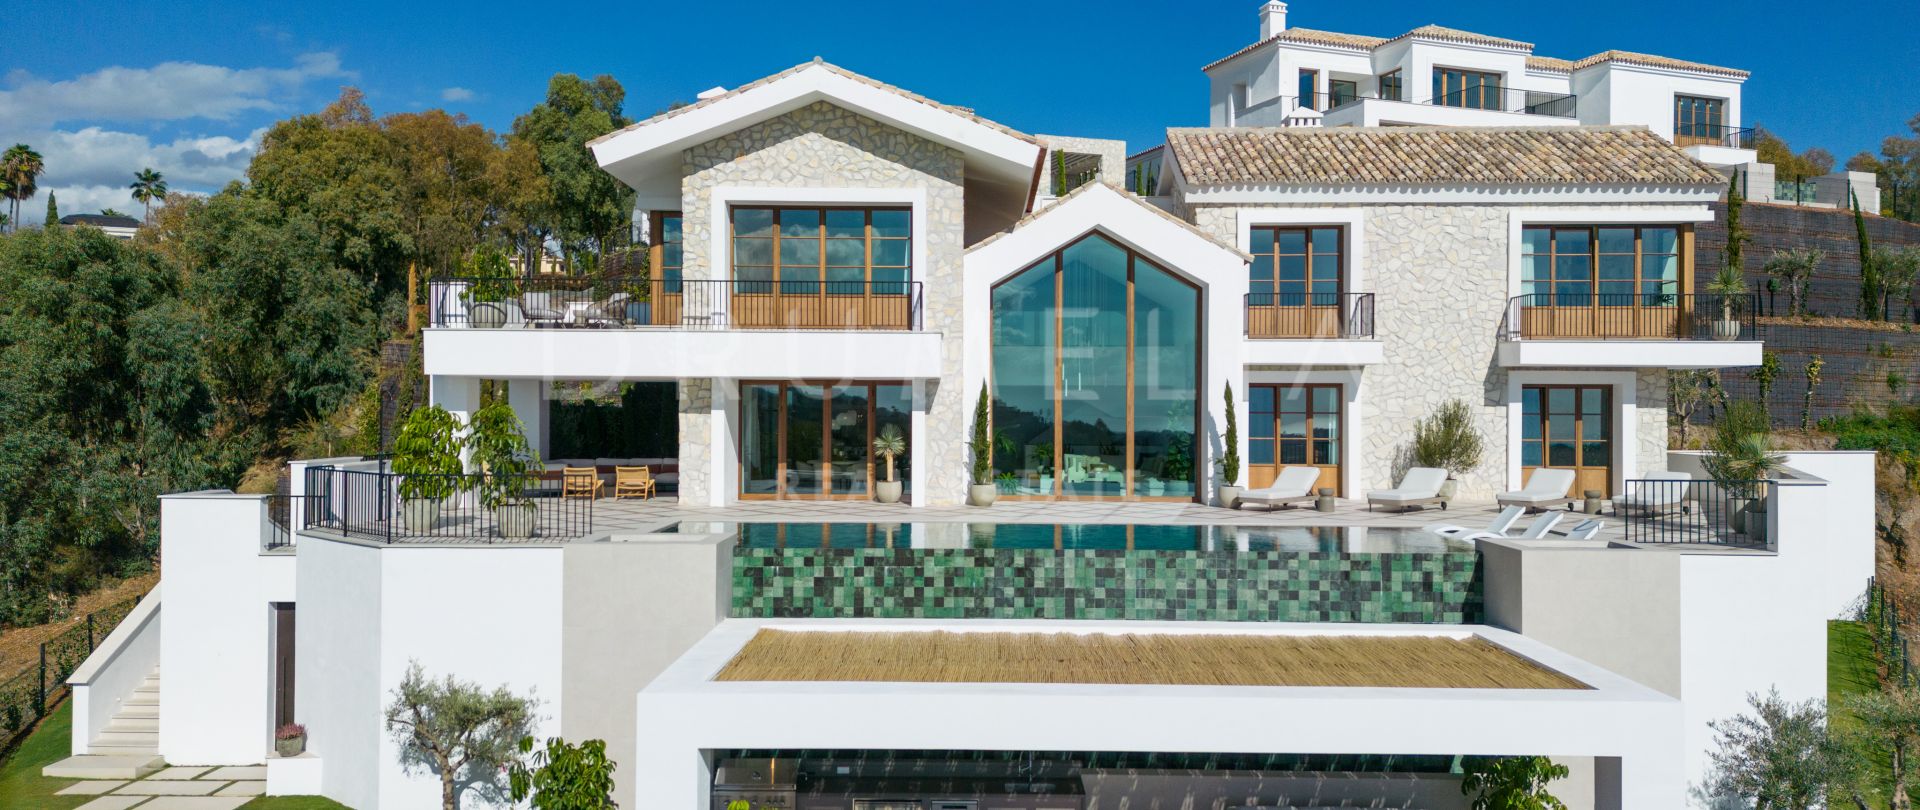 Extraordinär helt ny modern villa i hacienda-stil med havsutsikt i El Herrojo Benahavís